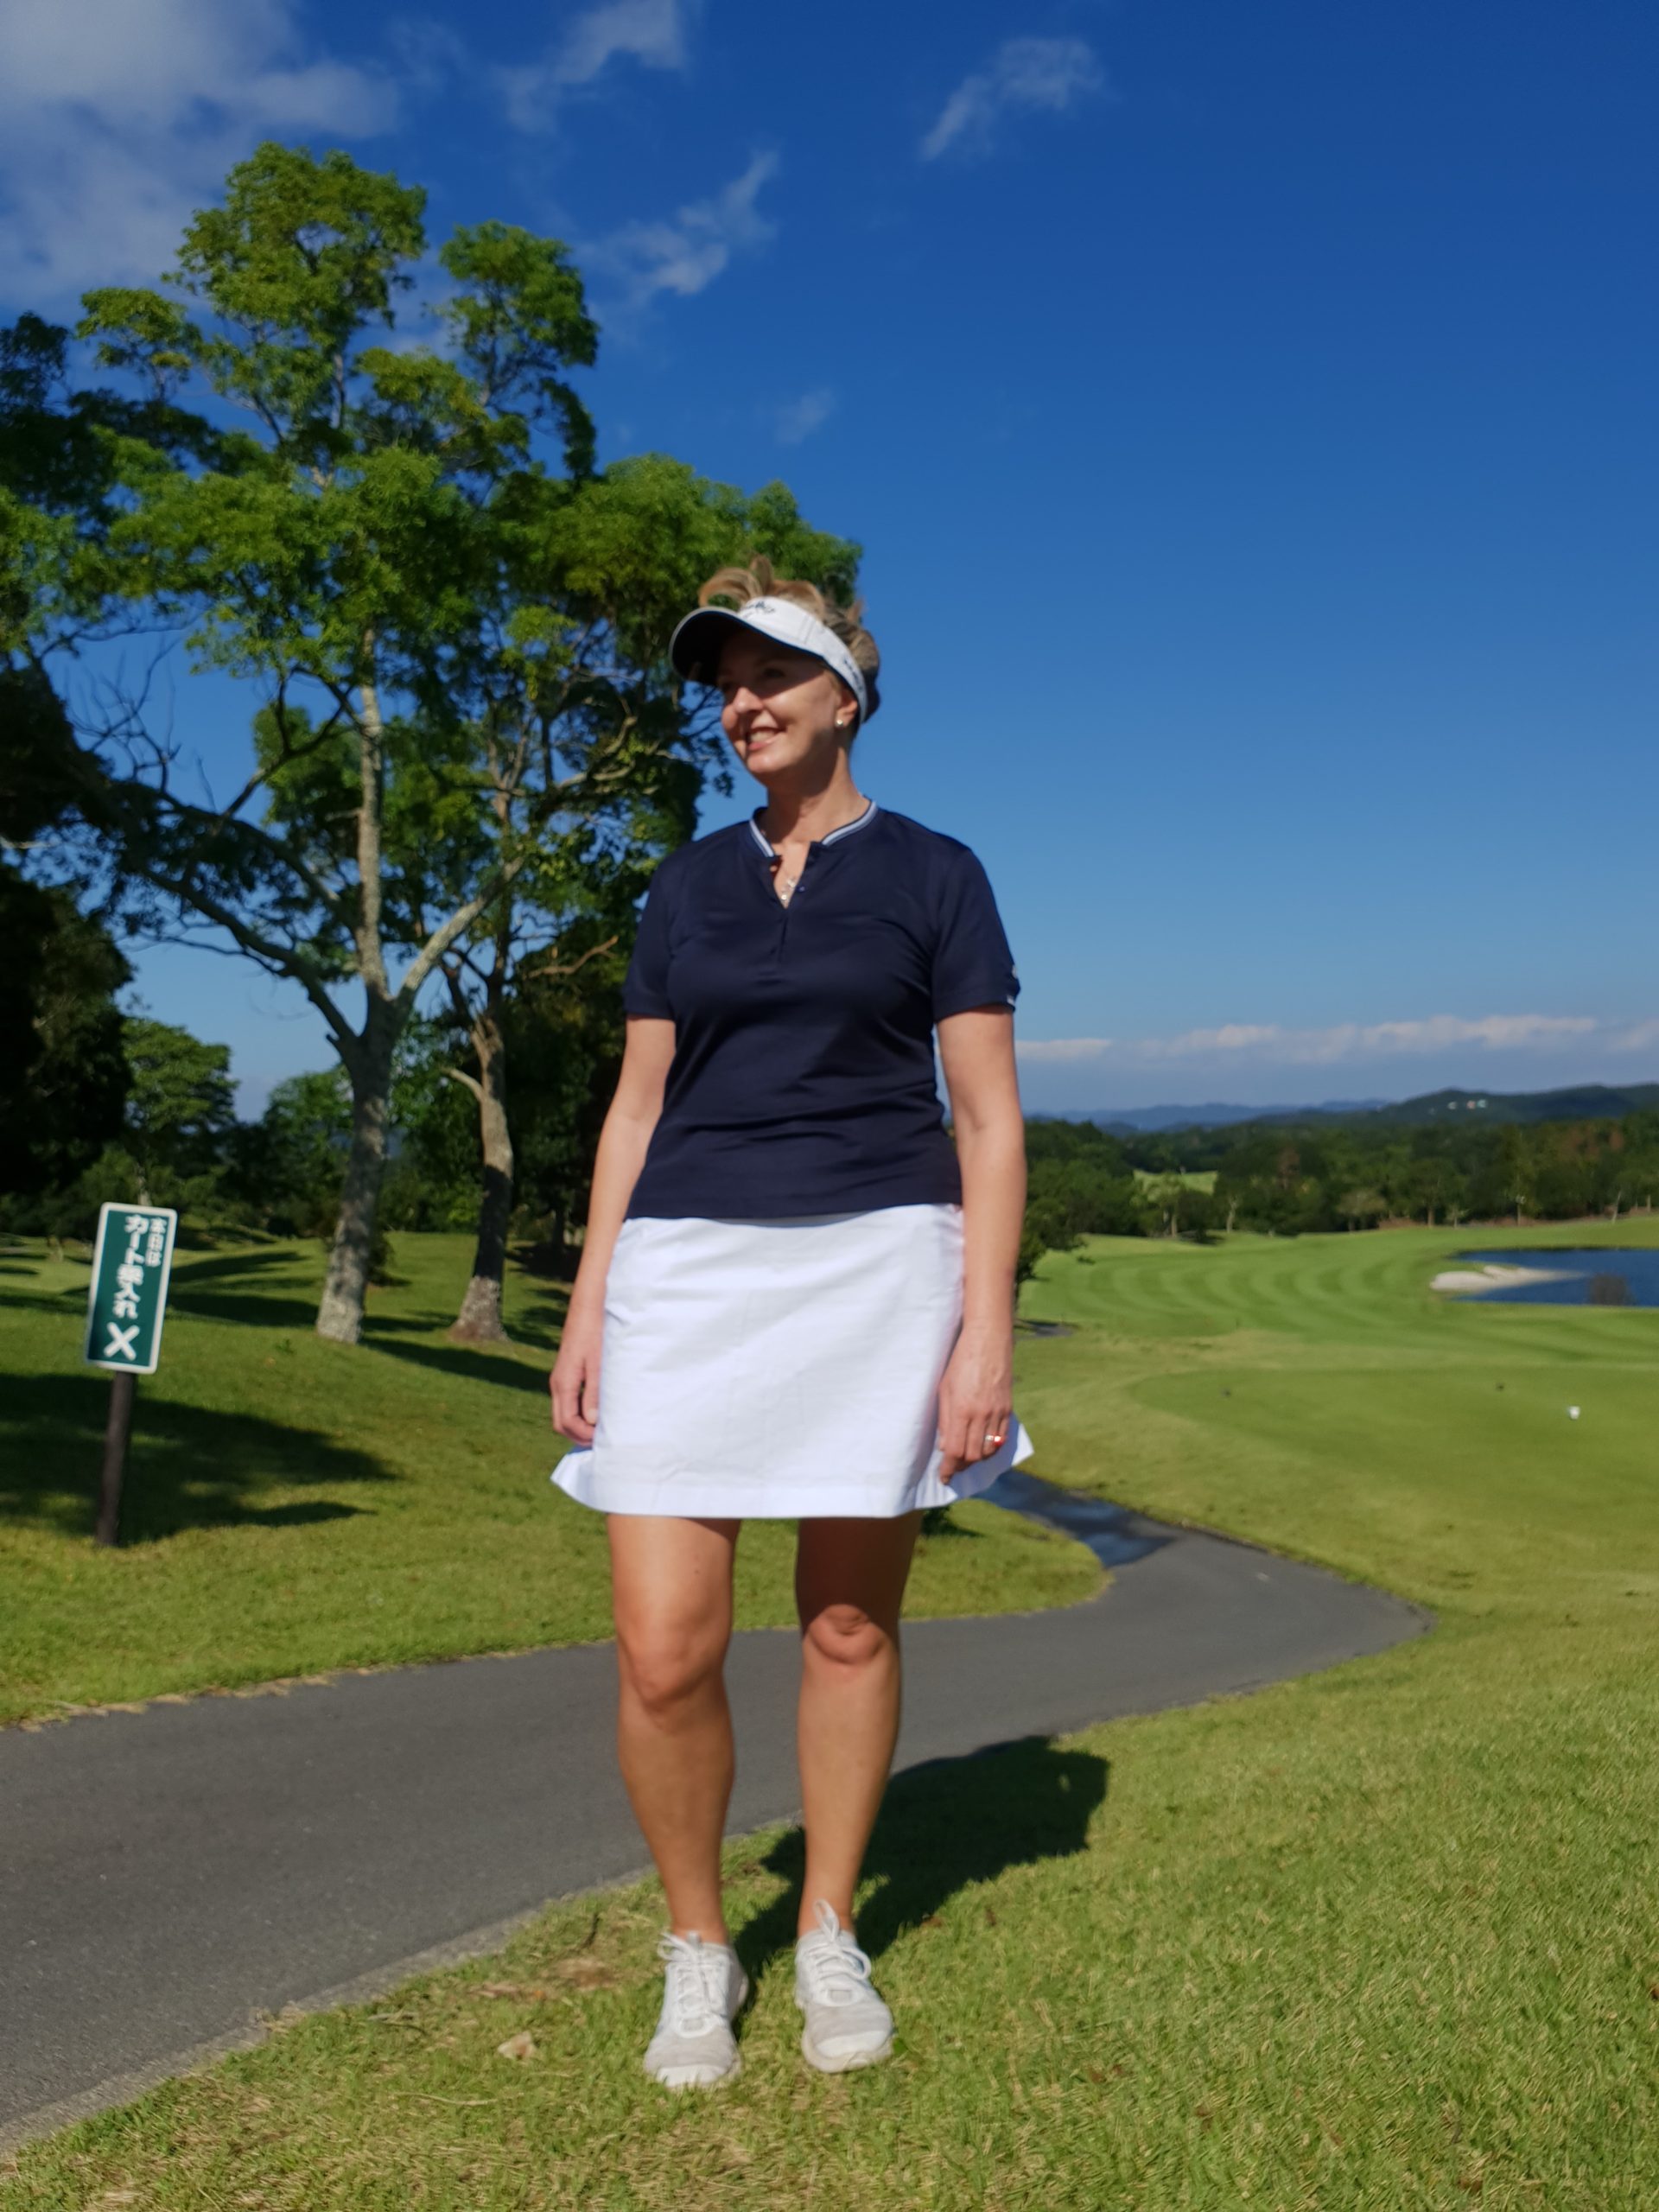 winter golf outfit apparel ladies – Golf Club Guru